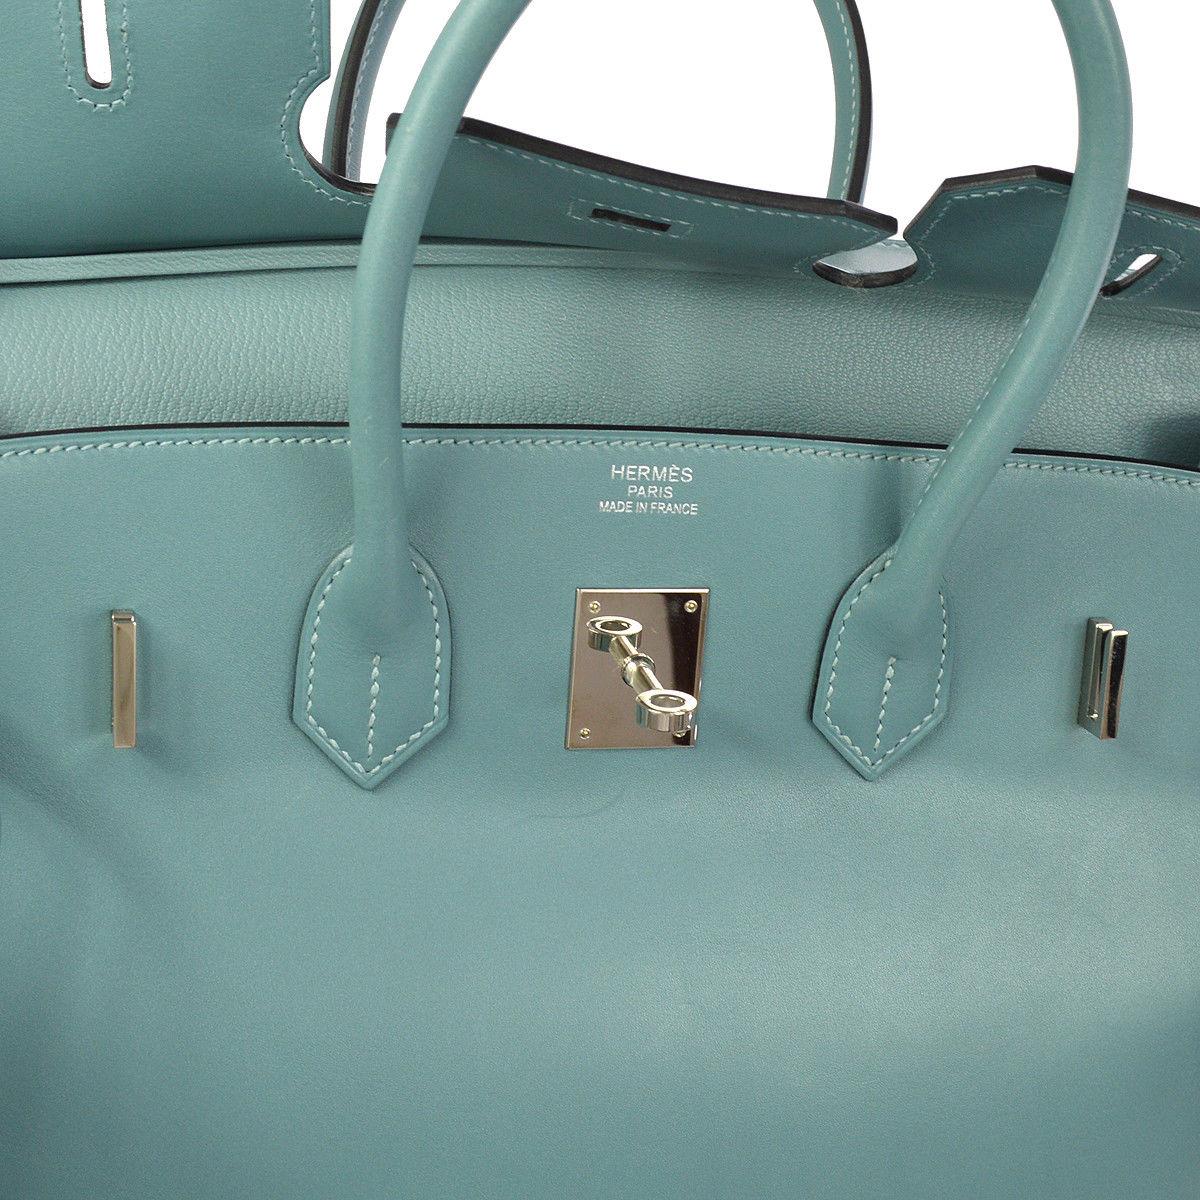 Hermes Birkin 35 Tiffany Blue Leather Top Handle Satchel Travel Shoulder Bag (Blau)